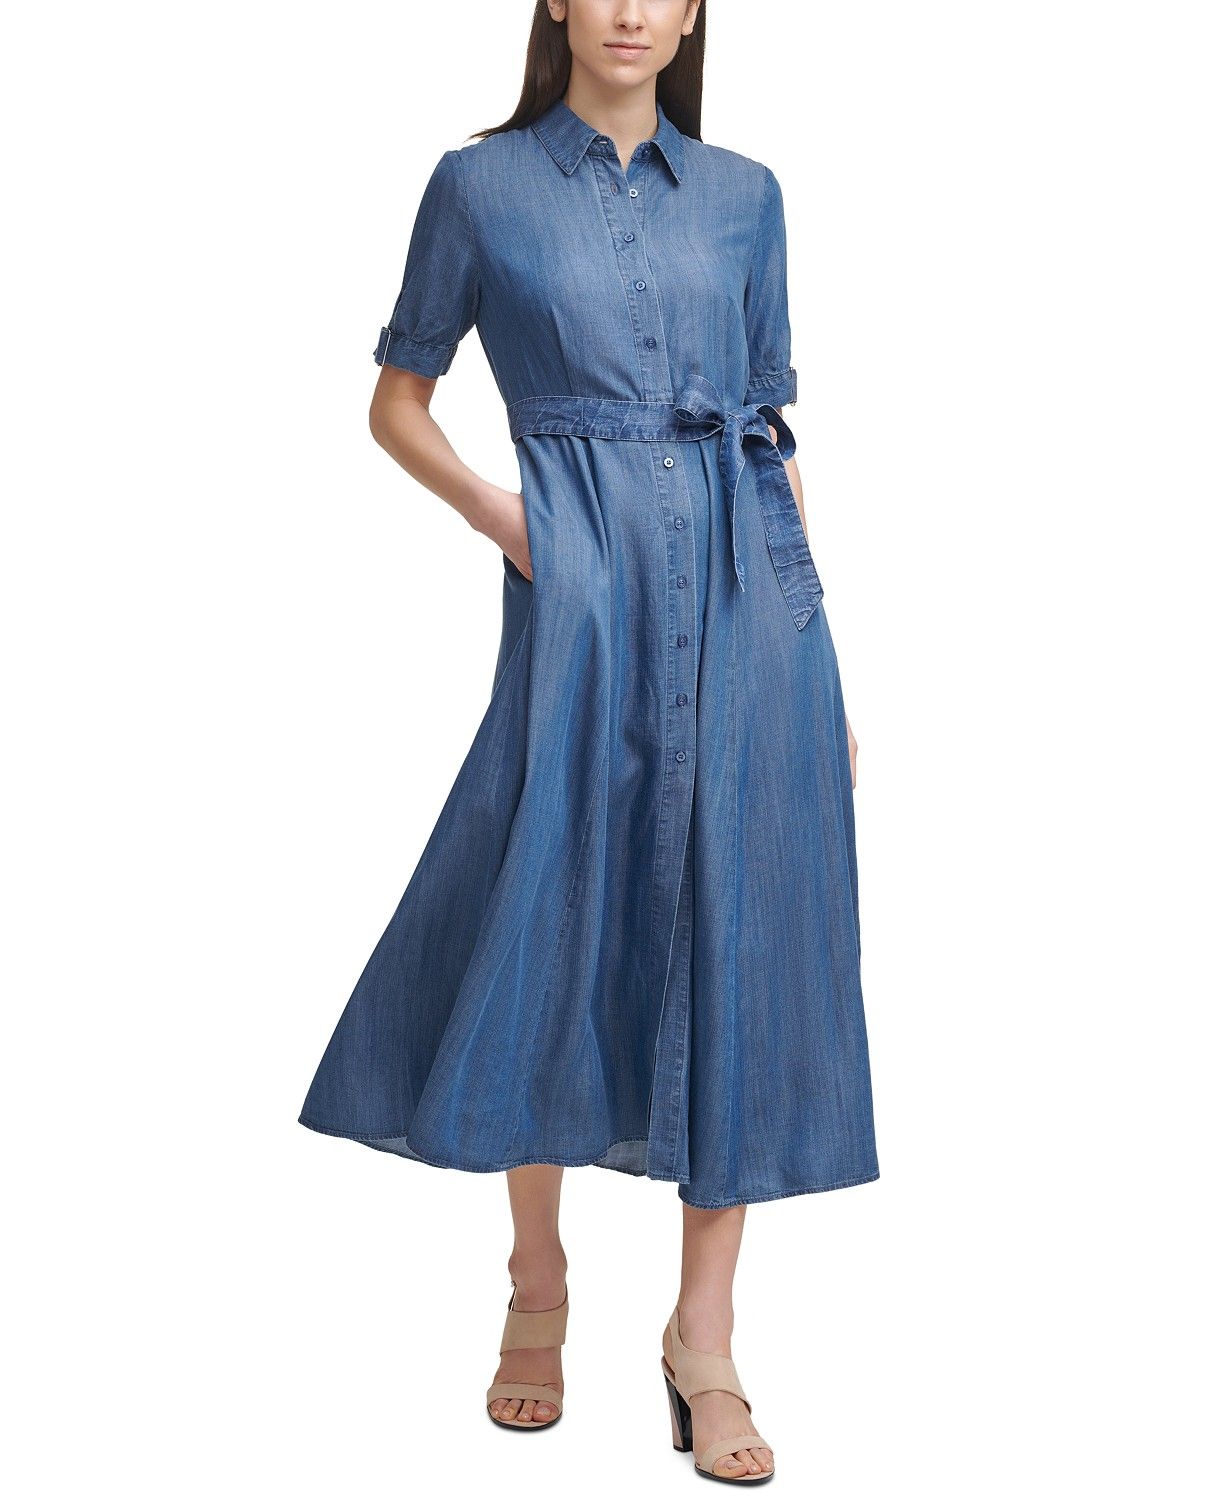 Calvin Klein Shirtdress & Reviews - Dresses - Women - Macy's | Macys (US)